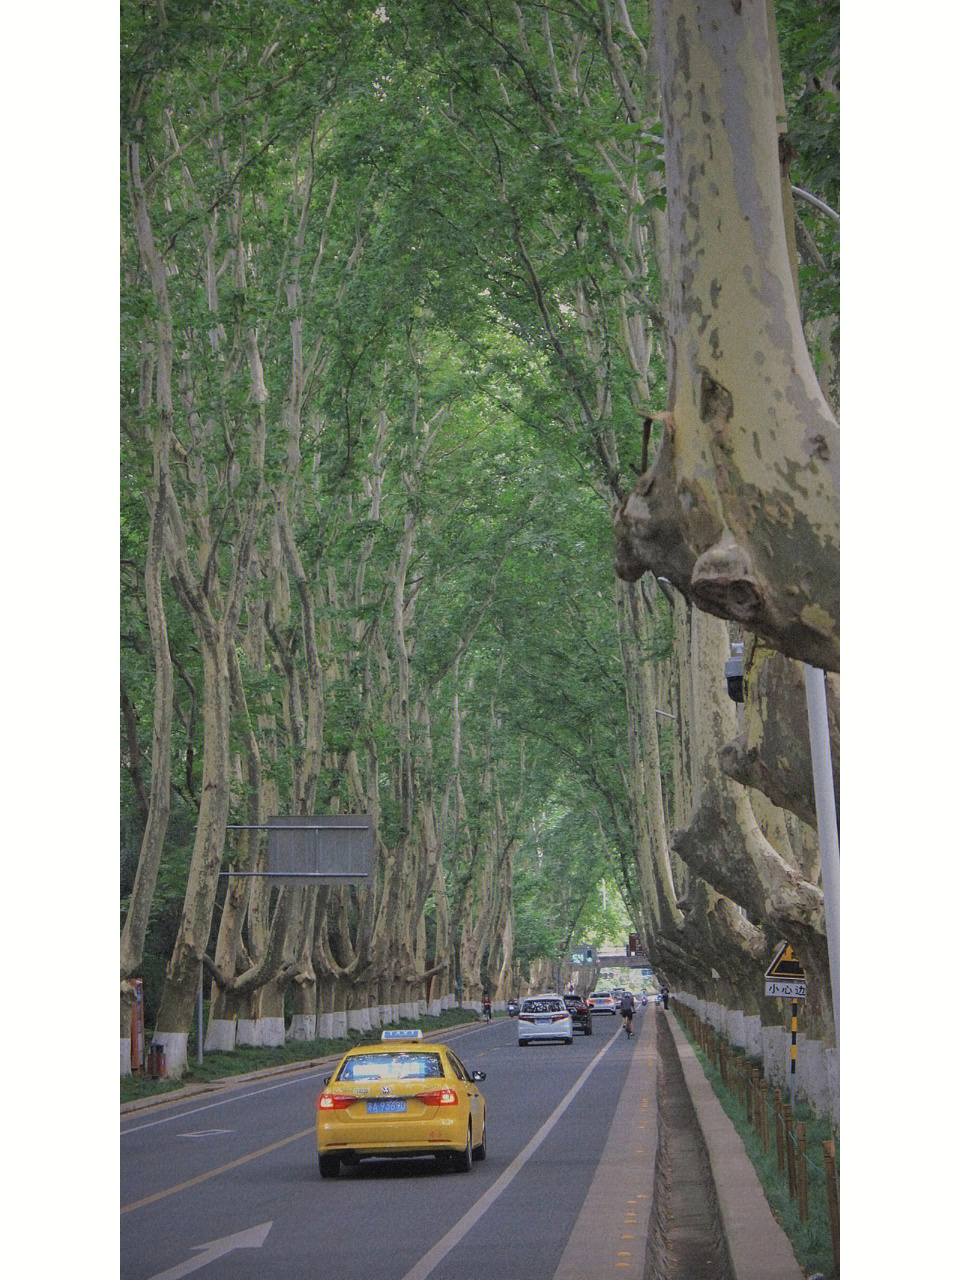 南京梧桐树的故事图片